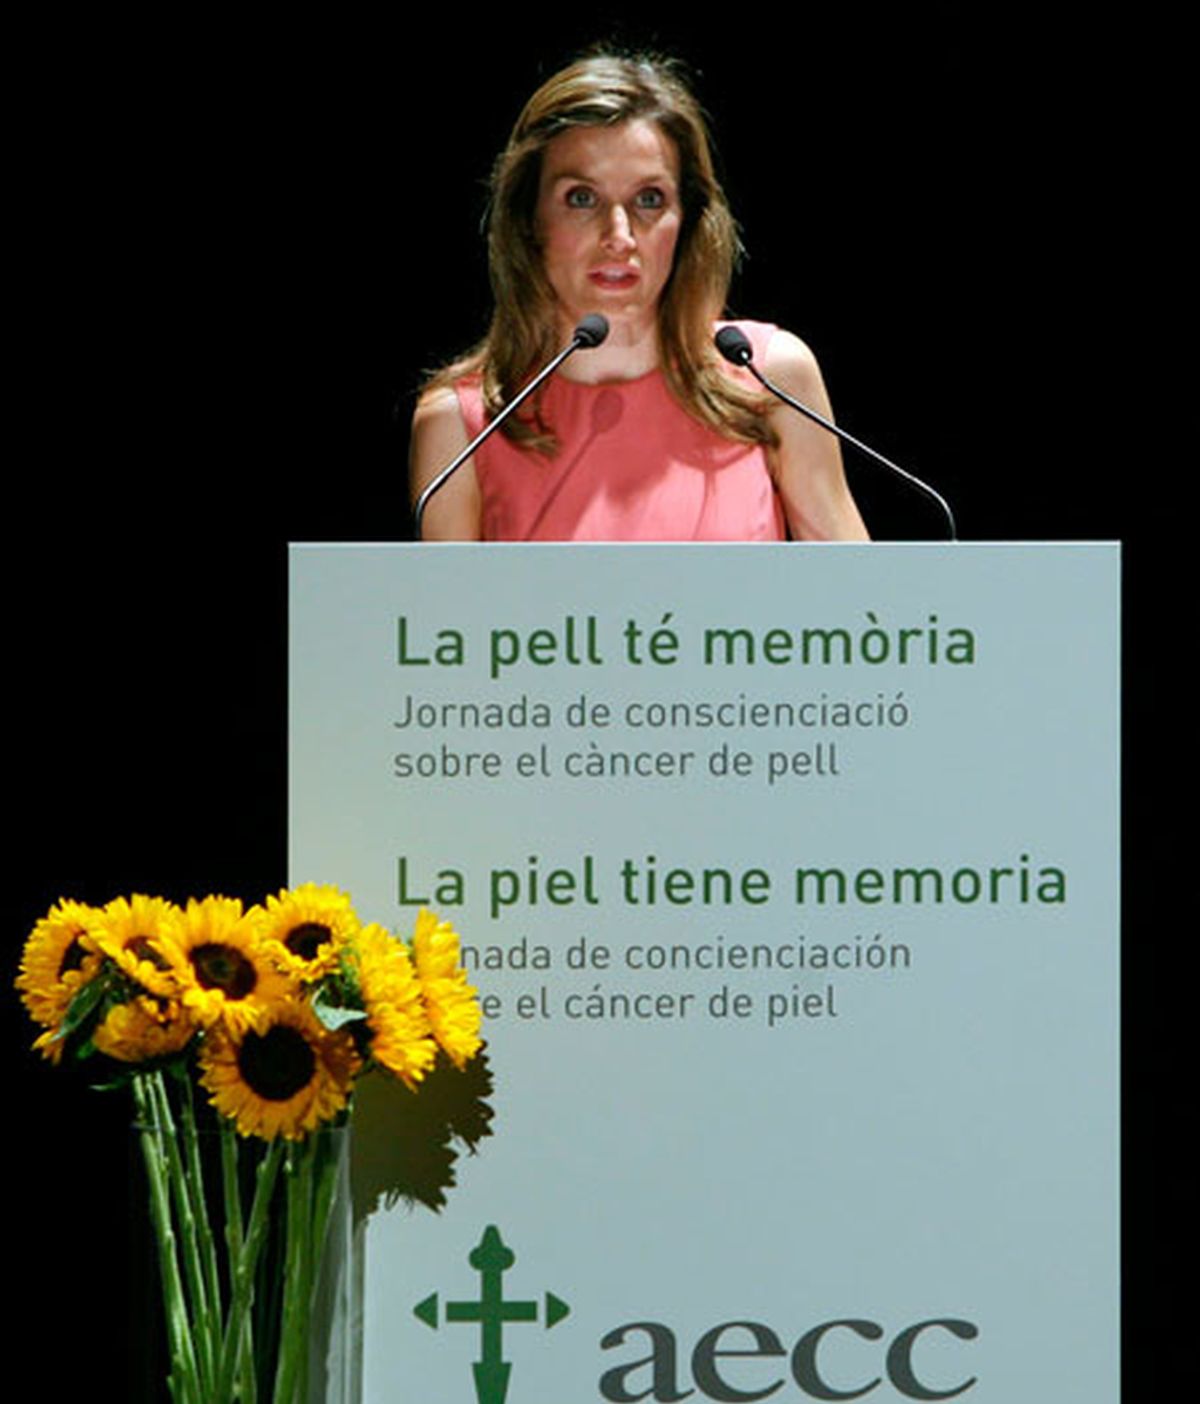 La princesa de Asturias y Girona Doña Letizia durante la inauguración de la jornada "La piel tiene memoria", organizada por la Asociación Española contra el Cáncer. Foto: EFE.